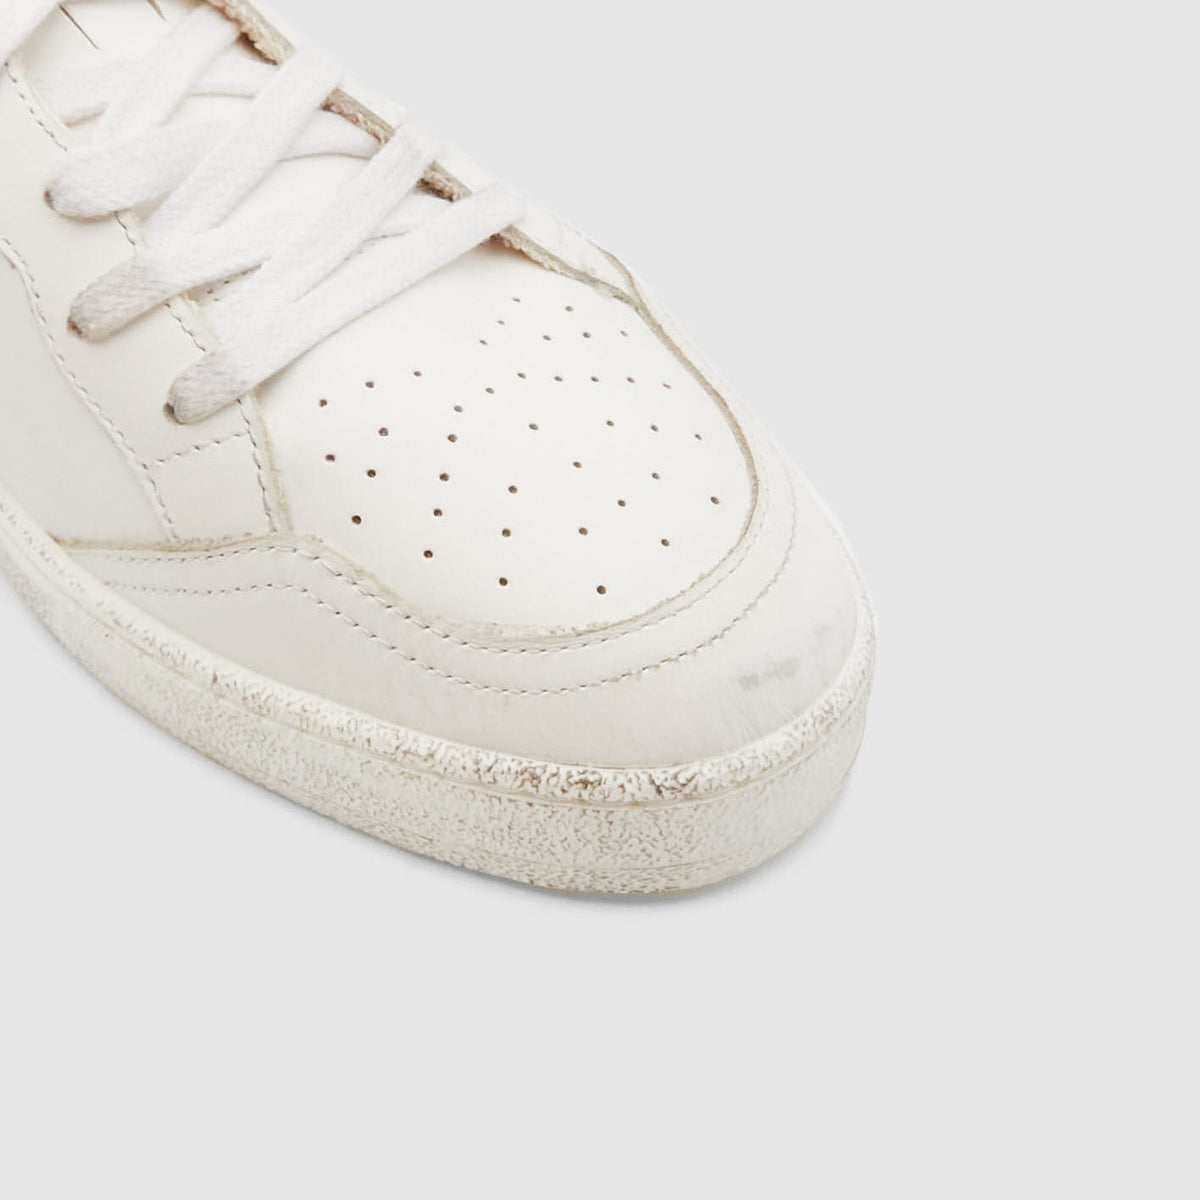 Golden Goose Ball Star Optic White Sneakers